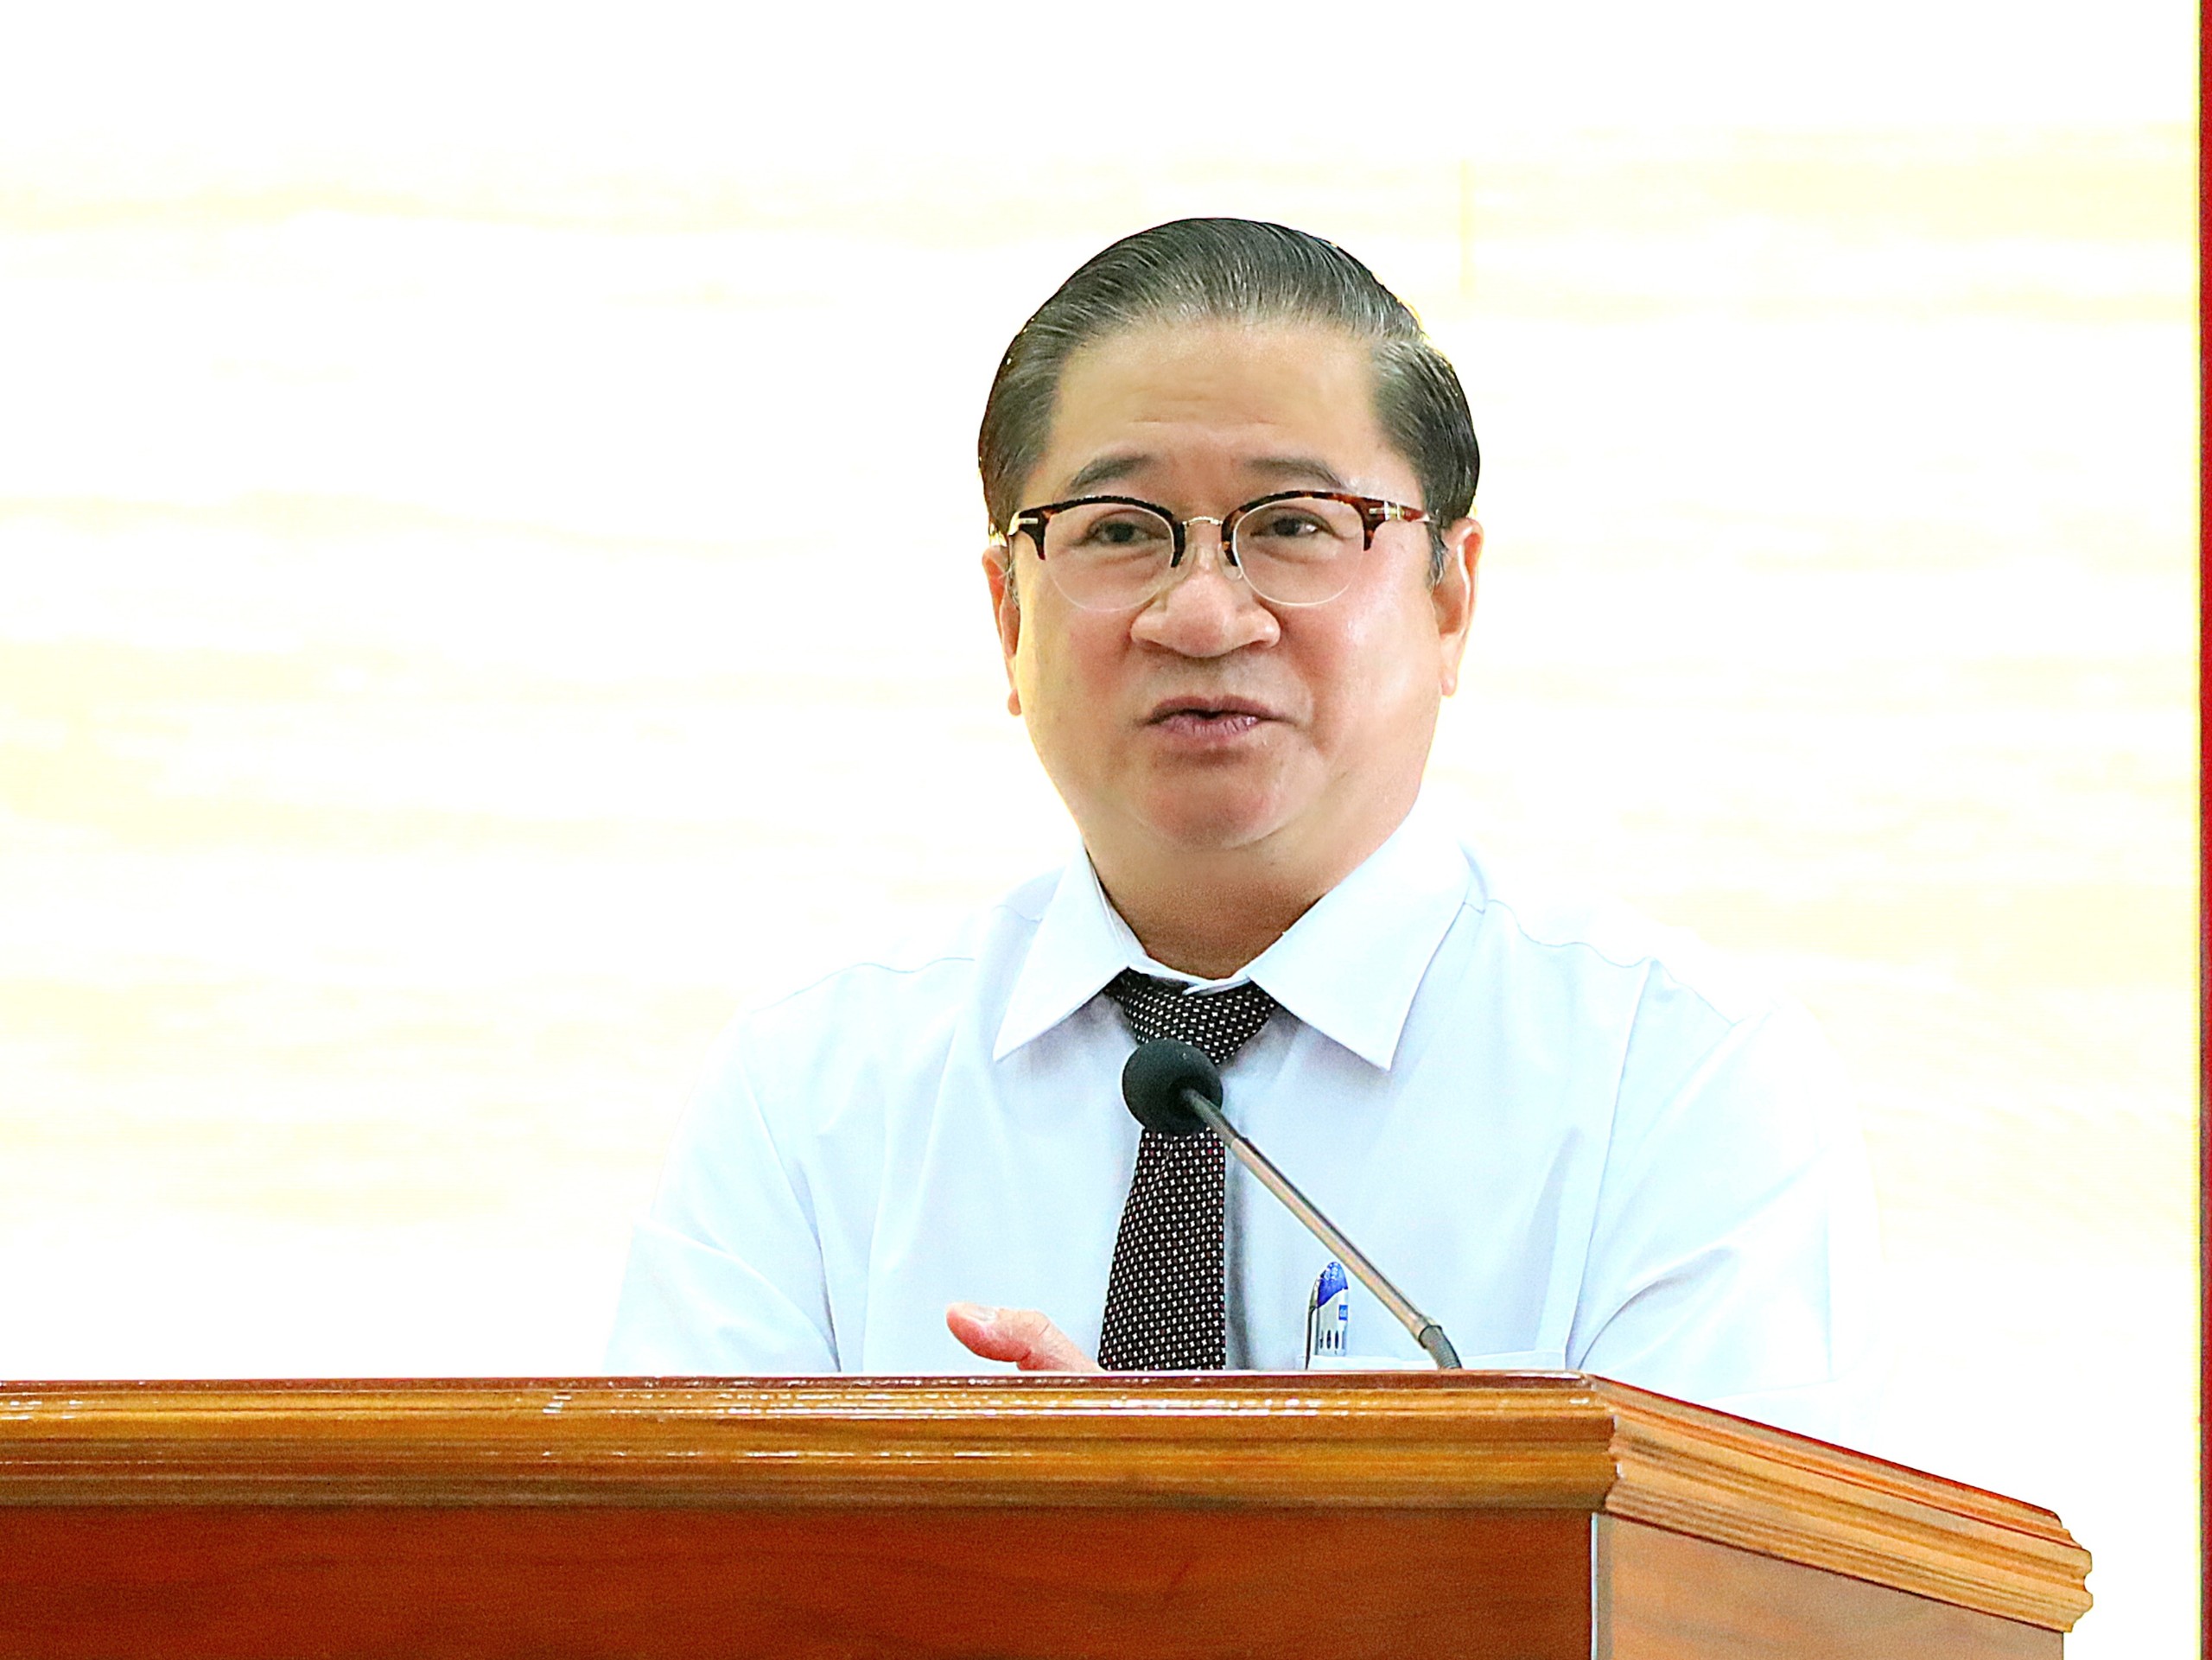 Ông Trần Việt Trường – Phó Bí thư Thành ủy, Chủ tịch UBND TP. Cần Thơ phát biểu tại buổi họp mặt.